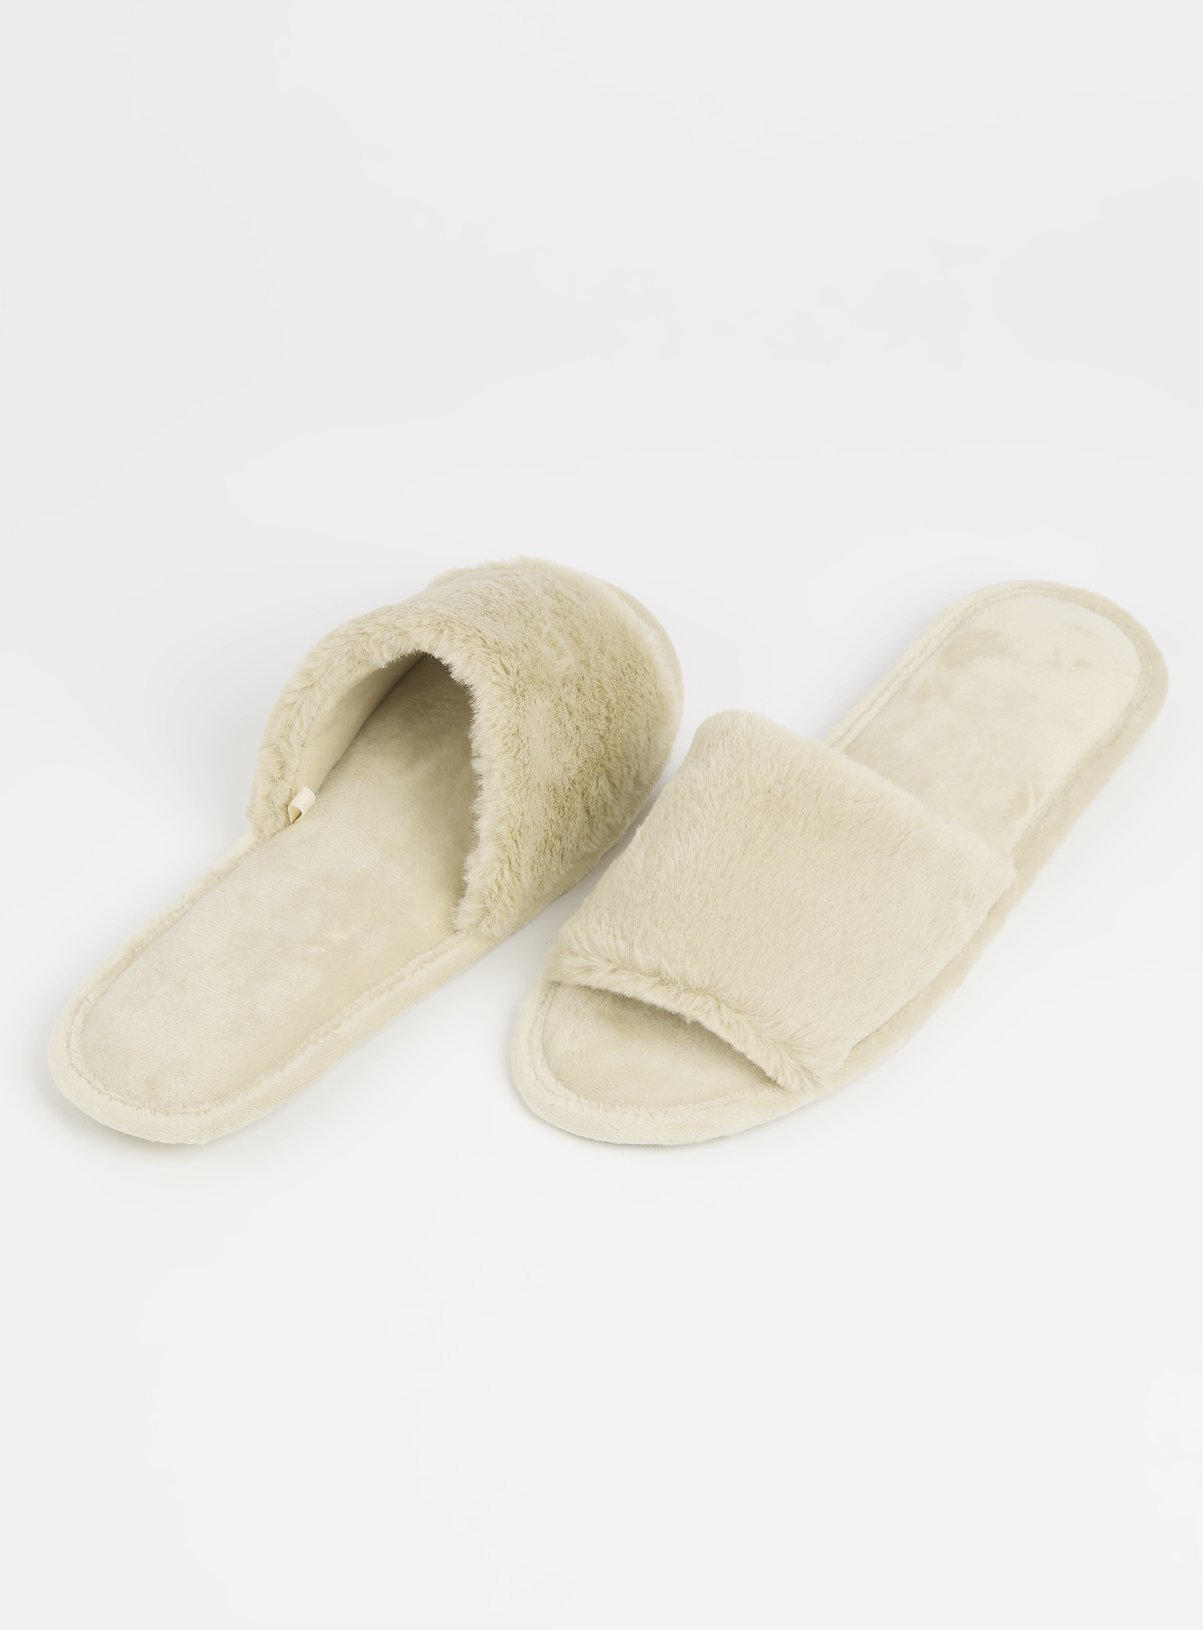 sainsbury slippers